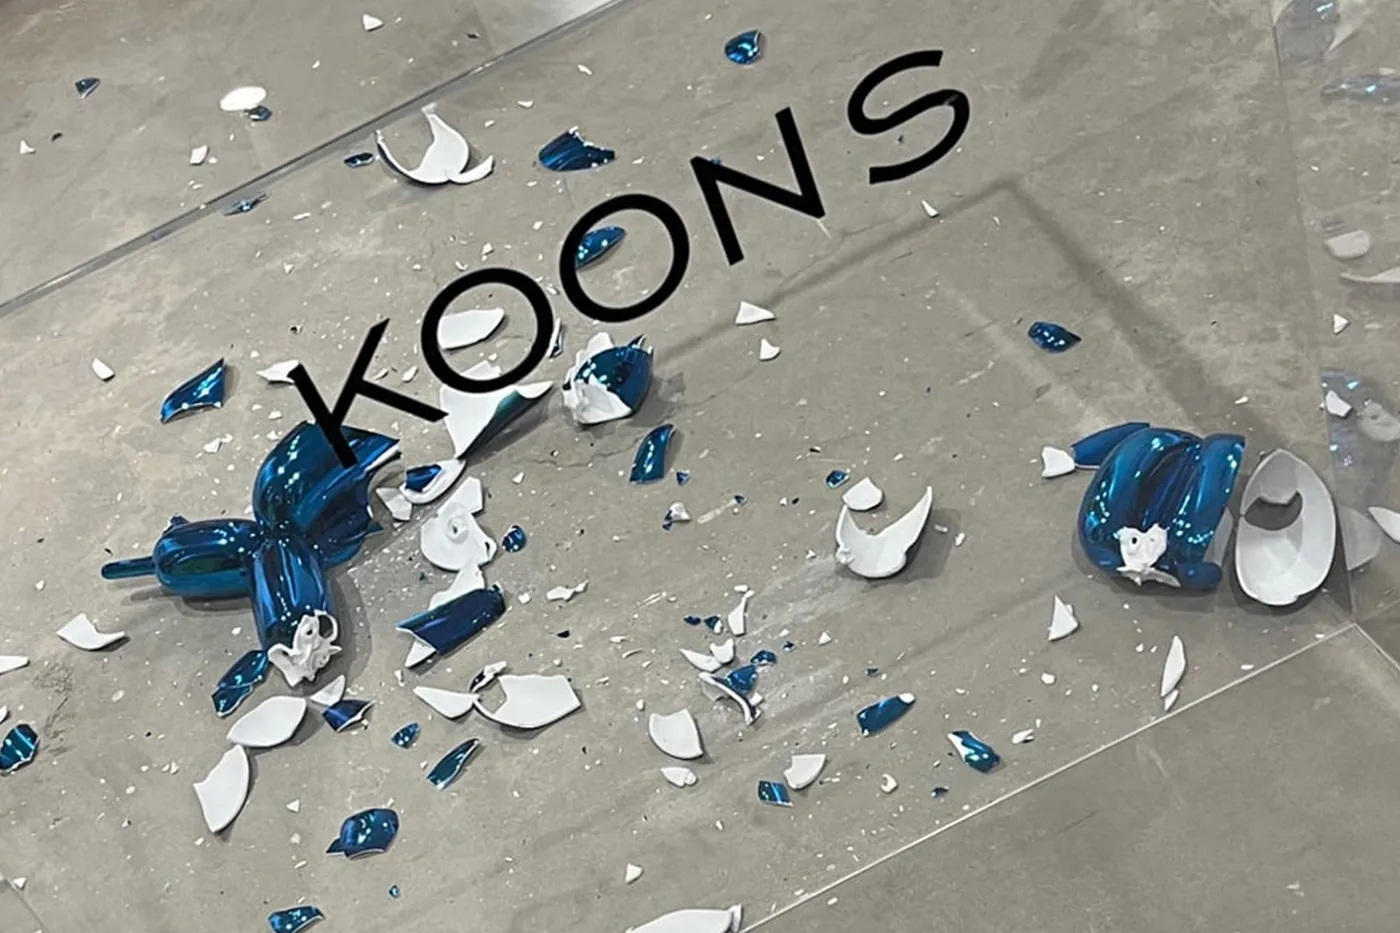 当代艺术家 Jeff Koons 要价 $42,000 美元「Balloon Dog」雕塑展览中意外摔成碎片